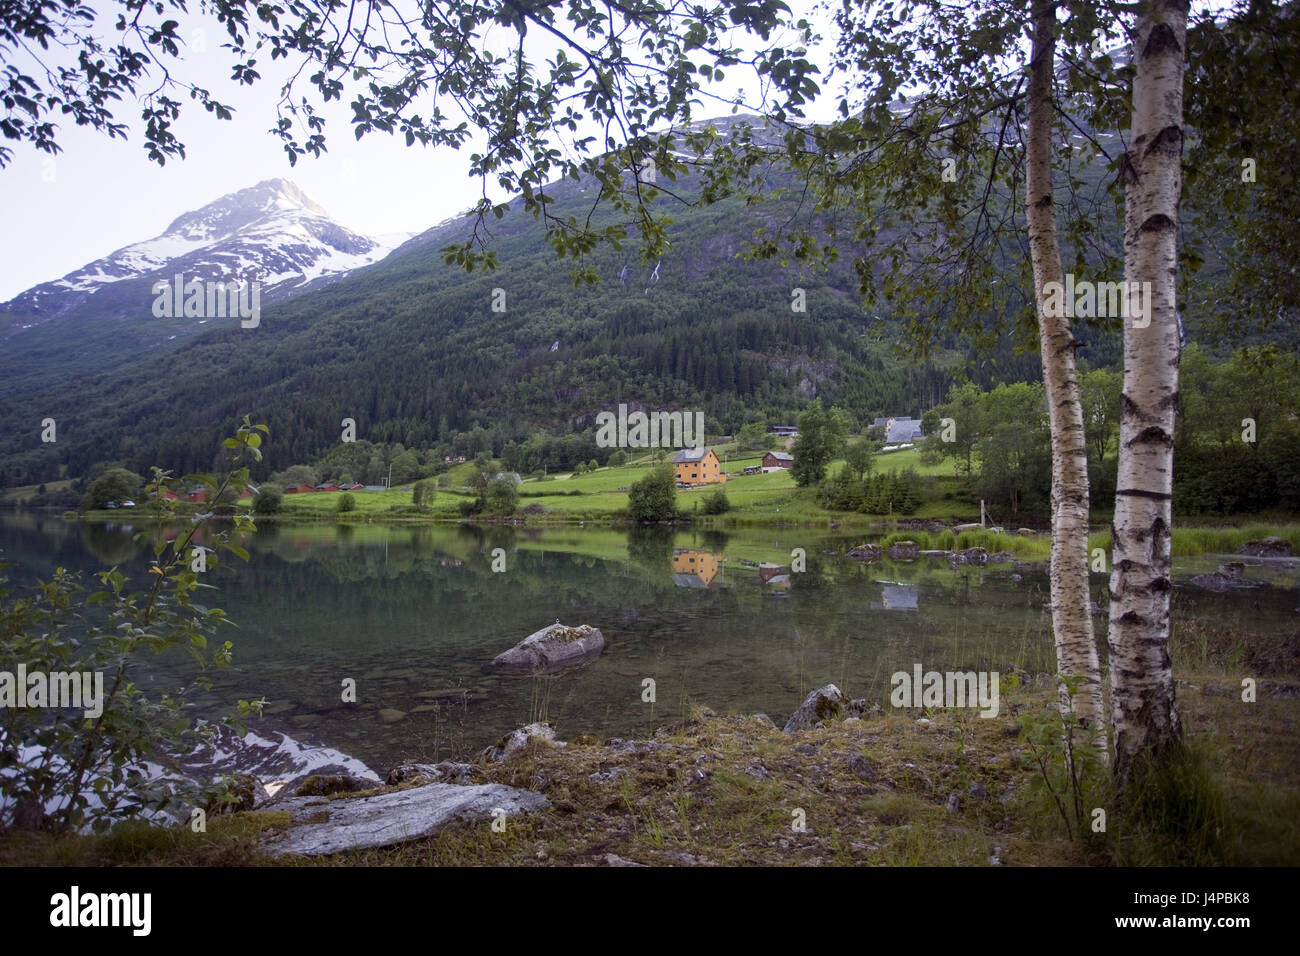 Norway, Sogn og Fjordane, Oldevatnet, lake, Stock Photo